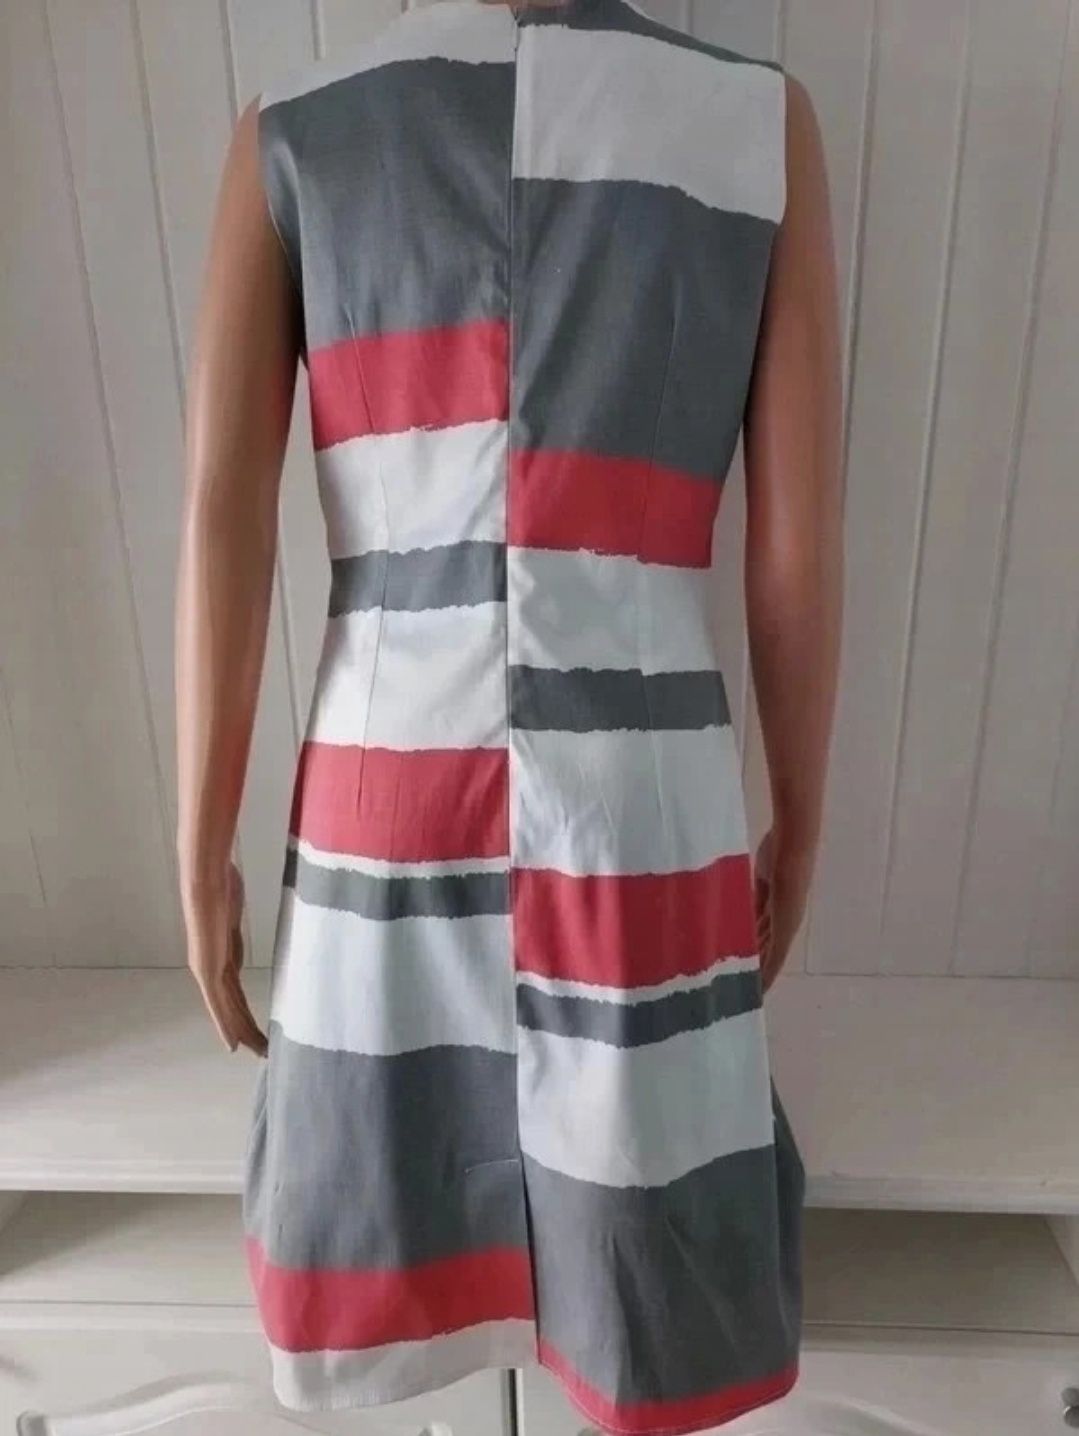 Kolorowa sukienka dopasowana bawełniana malinowy szary biały M 38